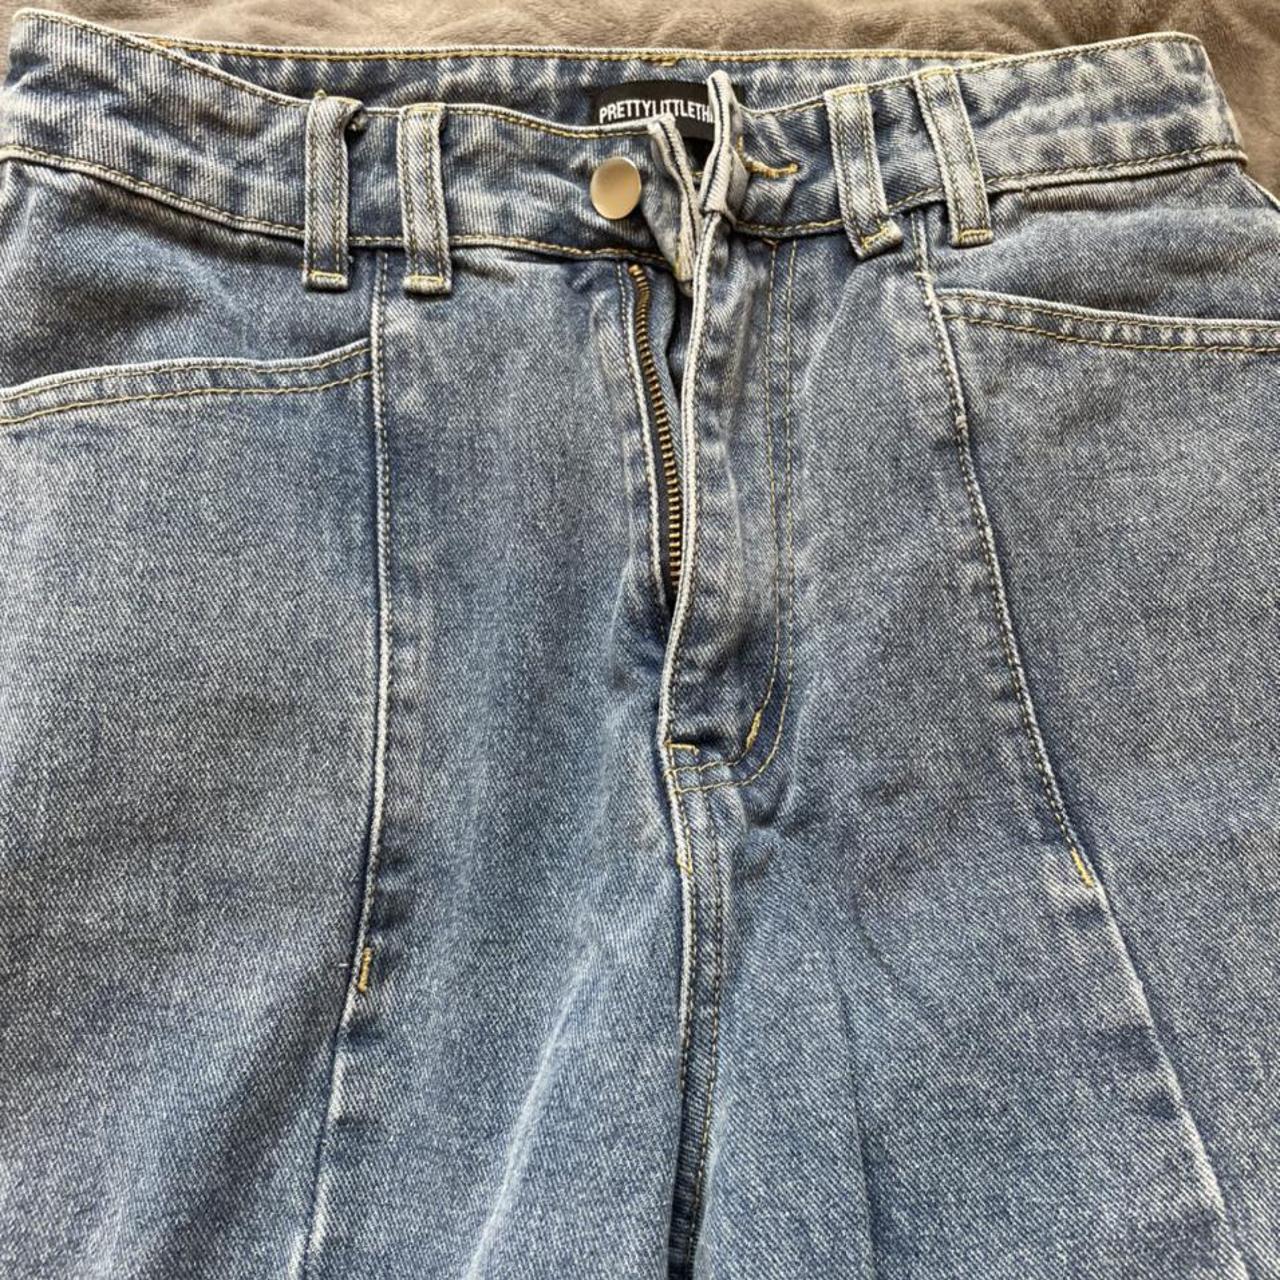 Vintage Wash Seam Front Wide Leg Jean